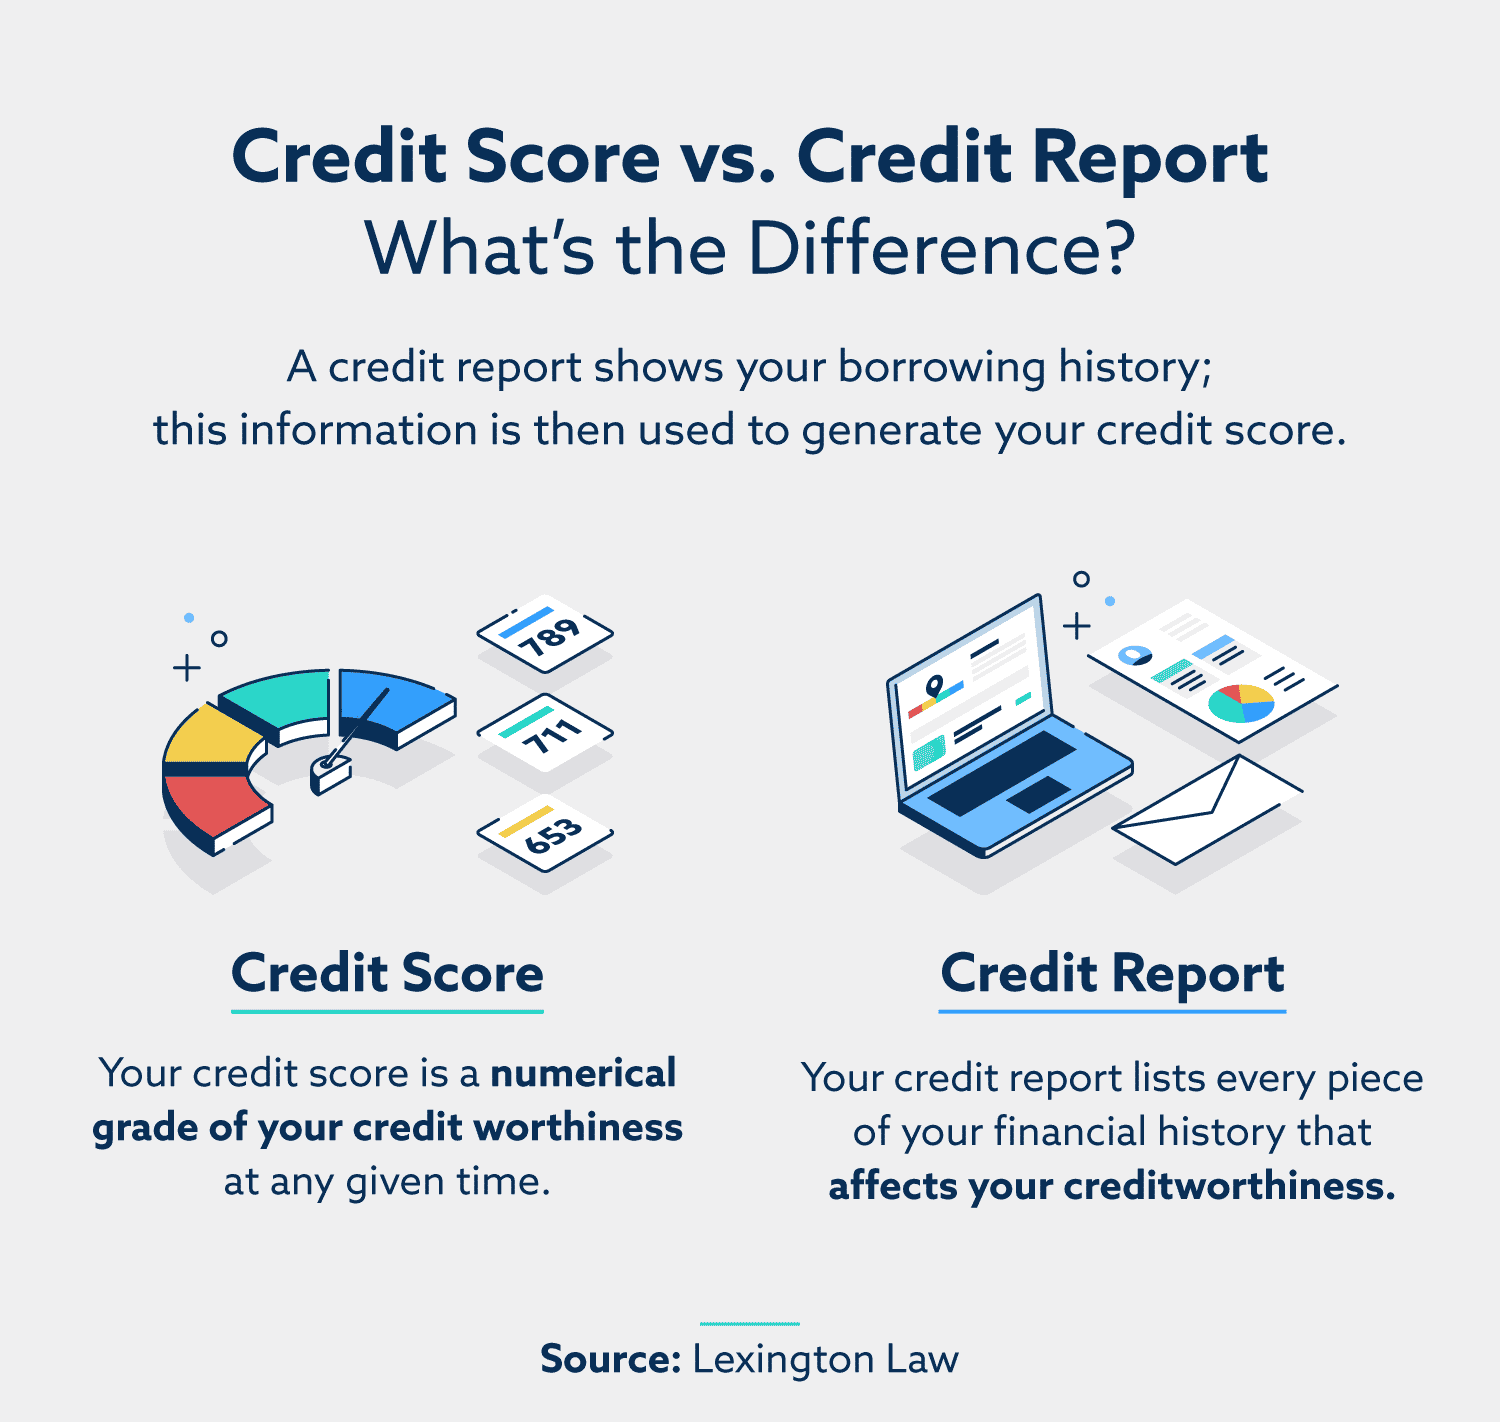 Credit Report vs Credit Score: What